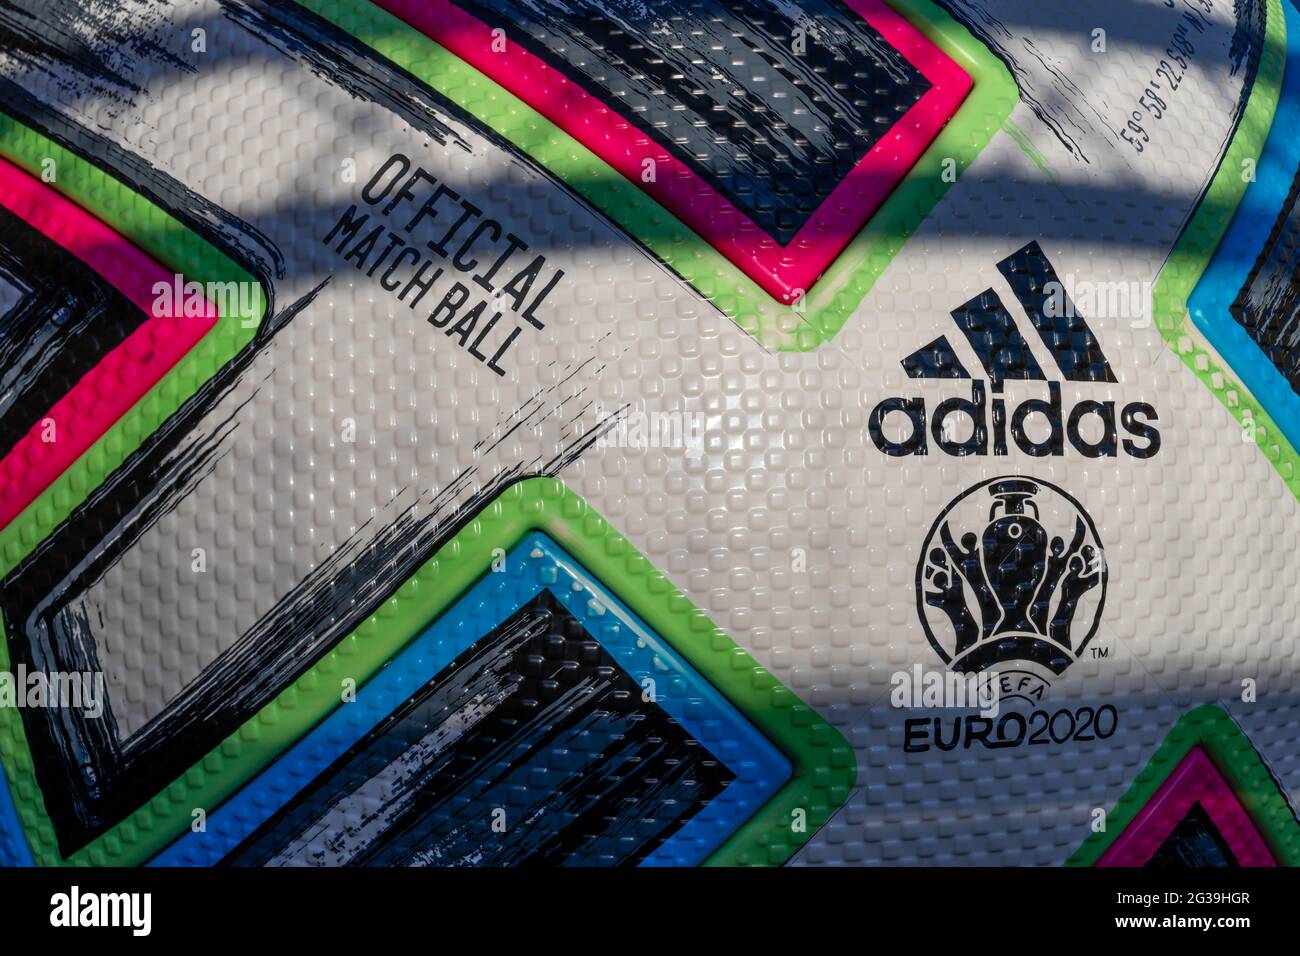 Nahaufnahme des offiziellen Spielballs der uefa-Europameisterschaft 2020 mit adidas-Logo in einer Fanzone in St. Petersburg, Russland Stockfoto